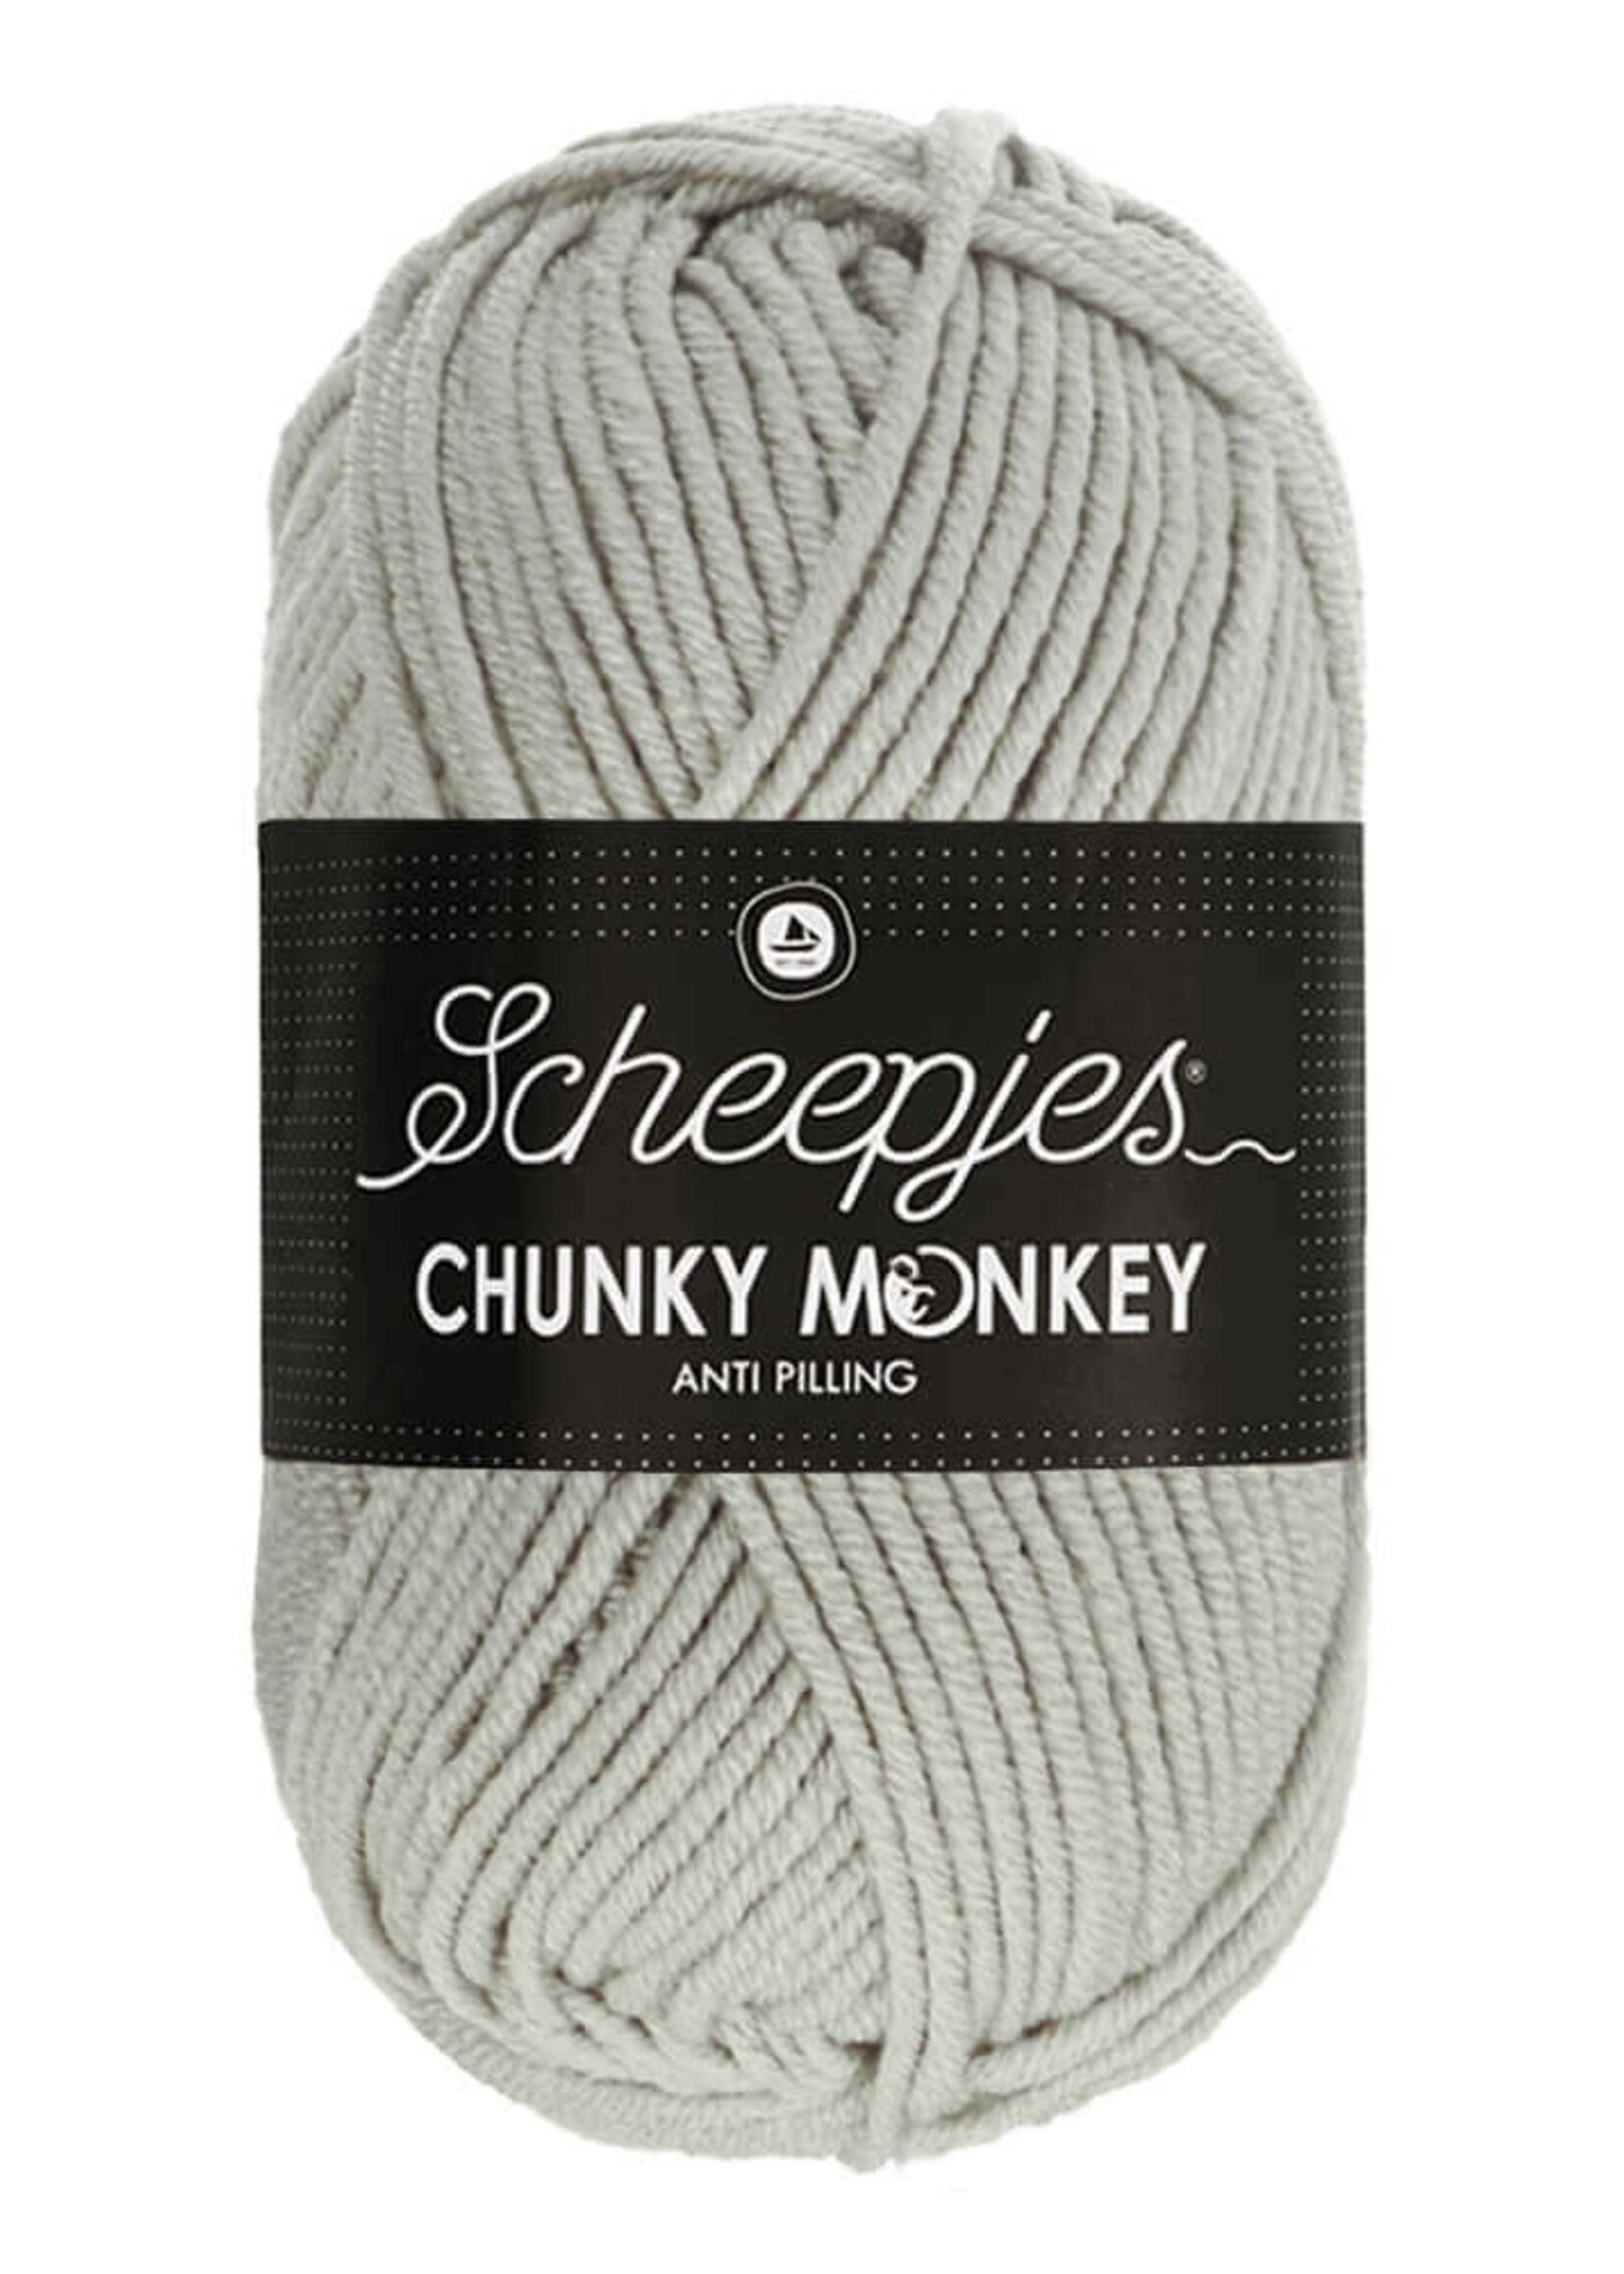 Scheepjes Chunky Monkey - Scheepjes -1203 Pale Grey